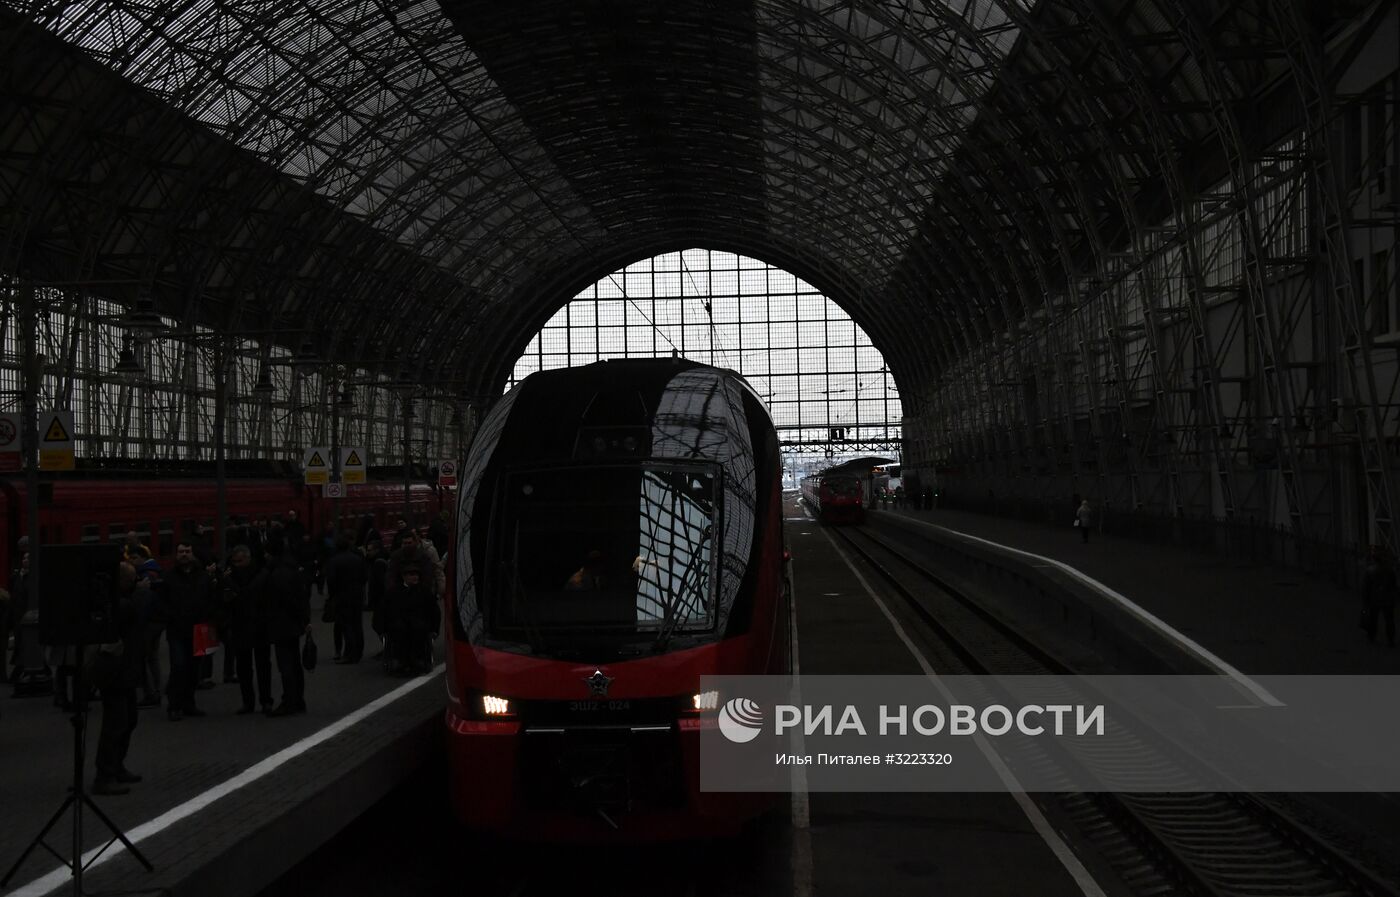 Запуск первого двухэтажного поезда "Аэроэкспресс" на Киевском вокзале